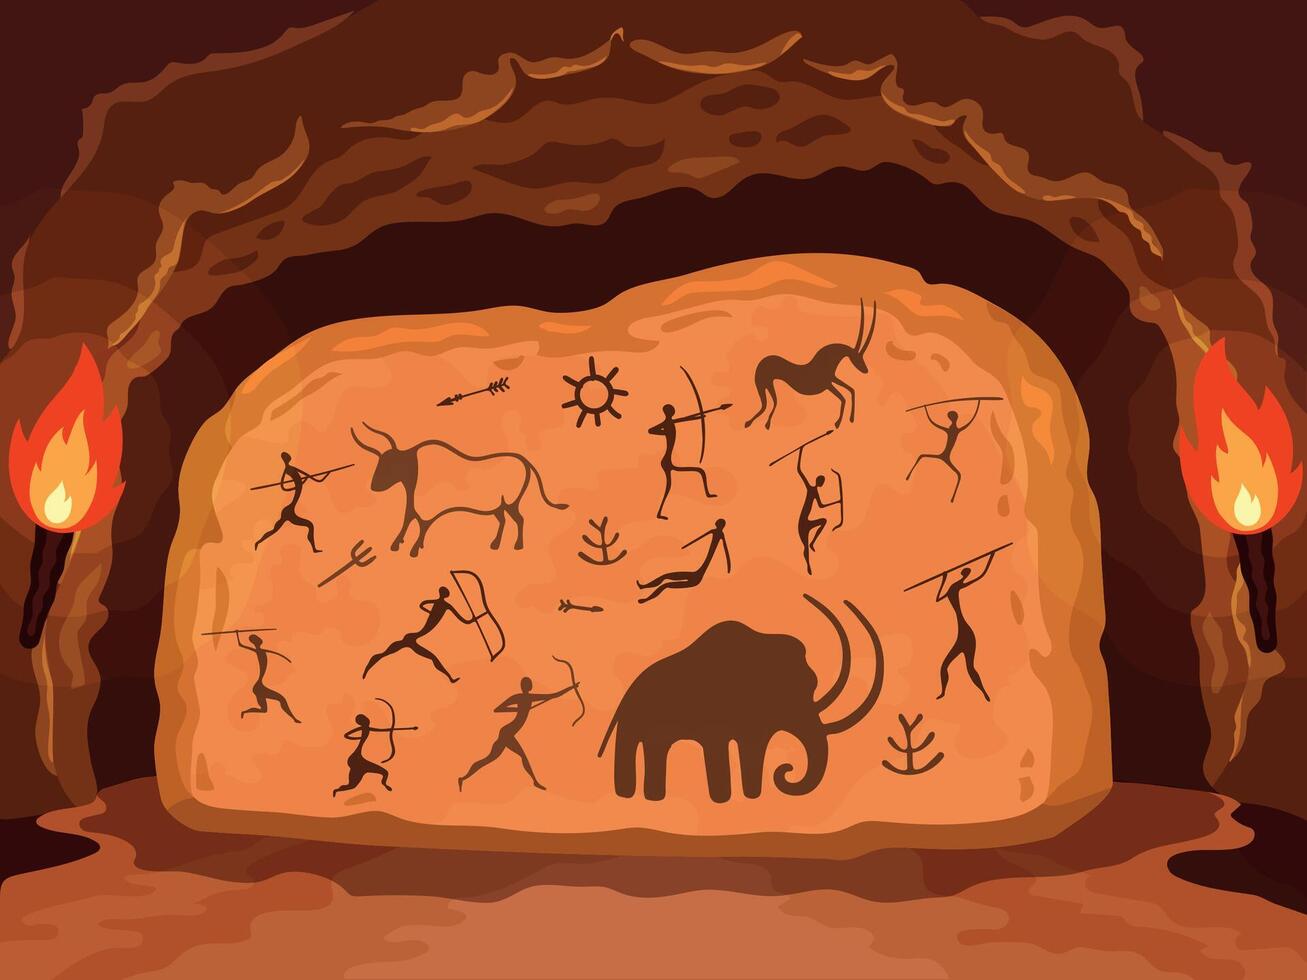 prähistorisch malen. Primitive Zeichnung auf Stein Mauer von Höhle, uralt Symbole von Jäger, Tiere und Zier Elemente. Vektor Schnitzereien auf Felsen Abbildung